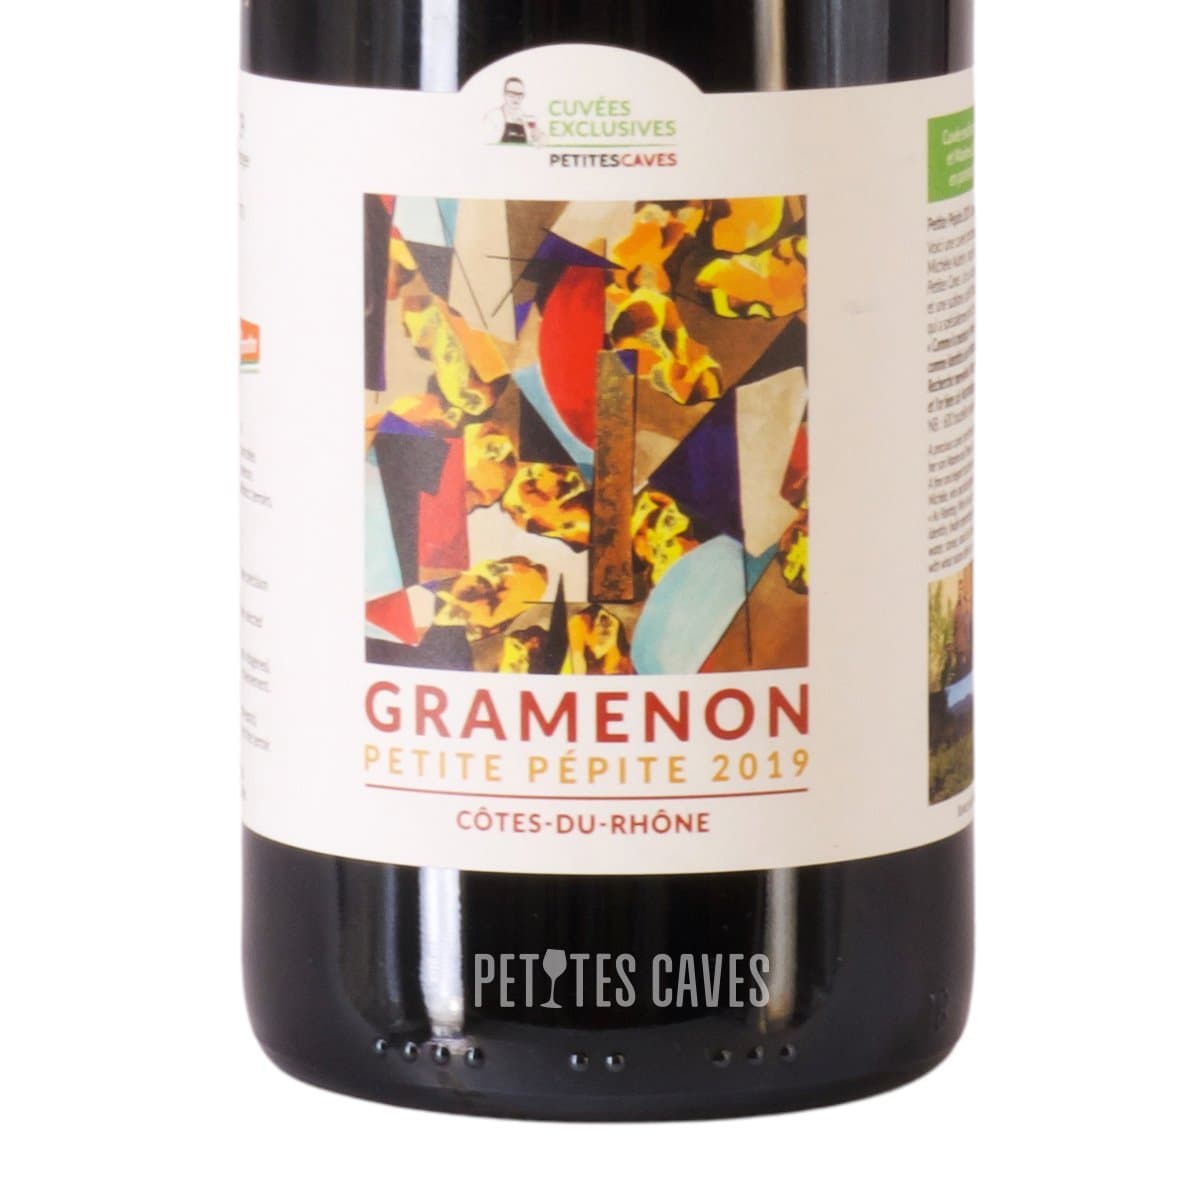 Petite Pépite 2019 - Domaine Gramenon - Côtes du Rhône - Cuvée Exclusive Petitescaves ZOOM